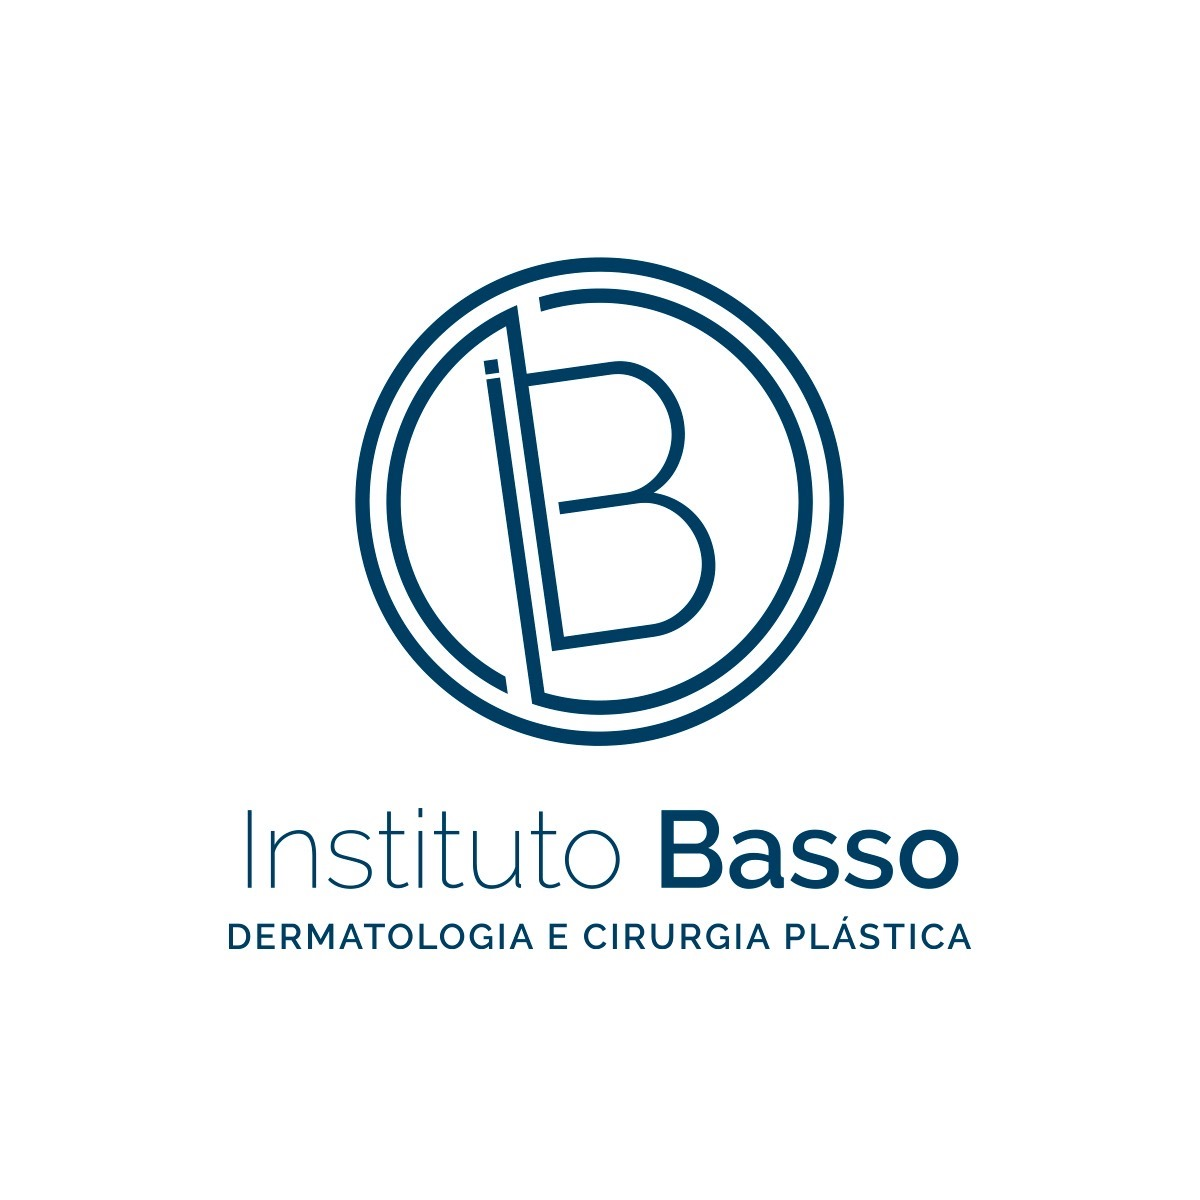 INSTITUTO-BASSO